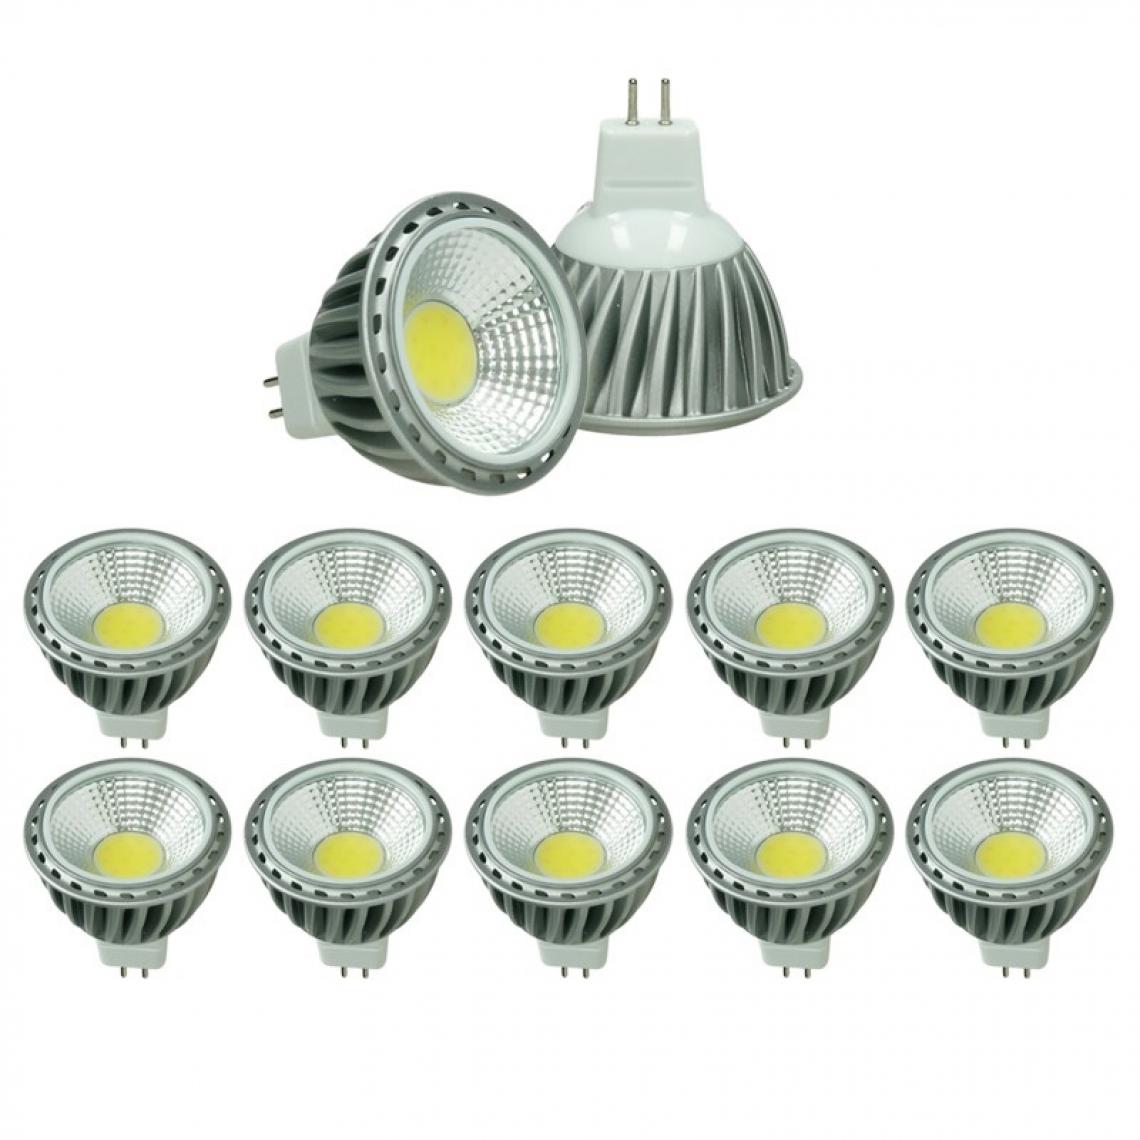 Ecd Germany - ECD Germany 10 x MR16 COB Spot 6W Haute-Puissance Lampe d'économie d'énergie d'environ 378 lumens remplace Lampe halogène 45W angle de 60 degrés Neutre Blanc 4000K - Ampoules LED